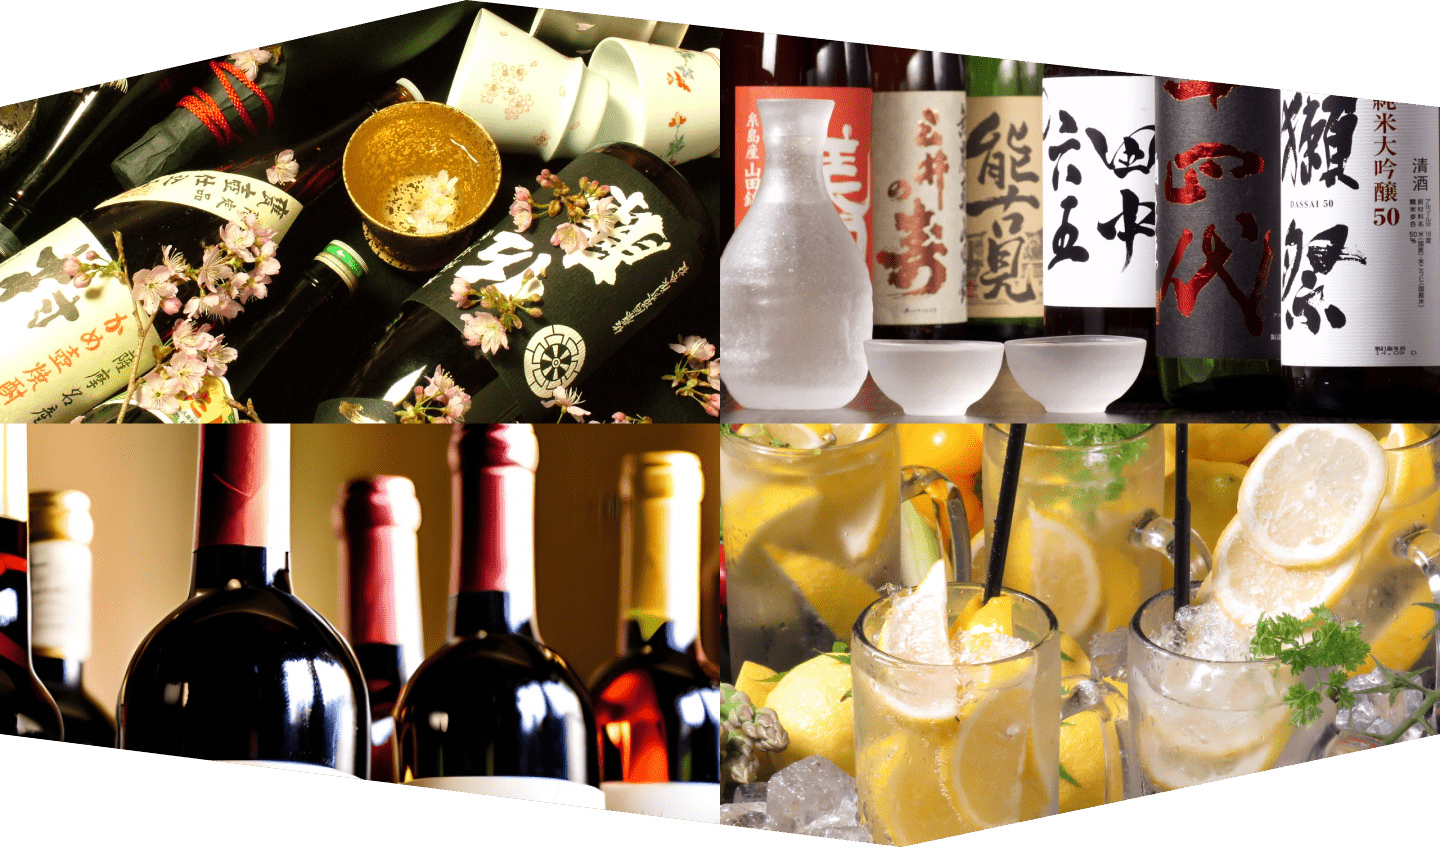 九州名物 芋・麦・米焼酎、日本酒(地酒)、ワインやレモンサワー等々さらにプレミアム酒も多数用意しています。